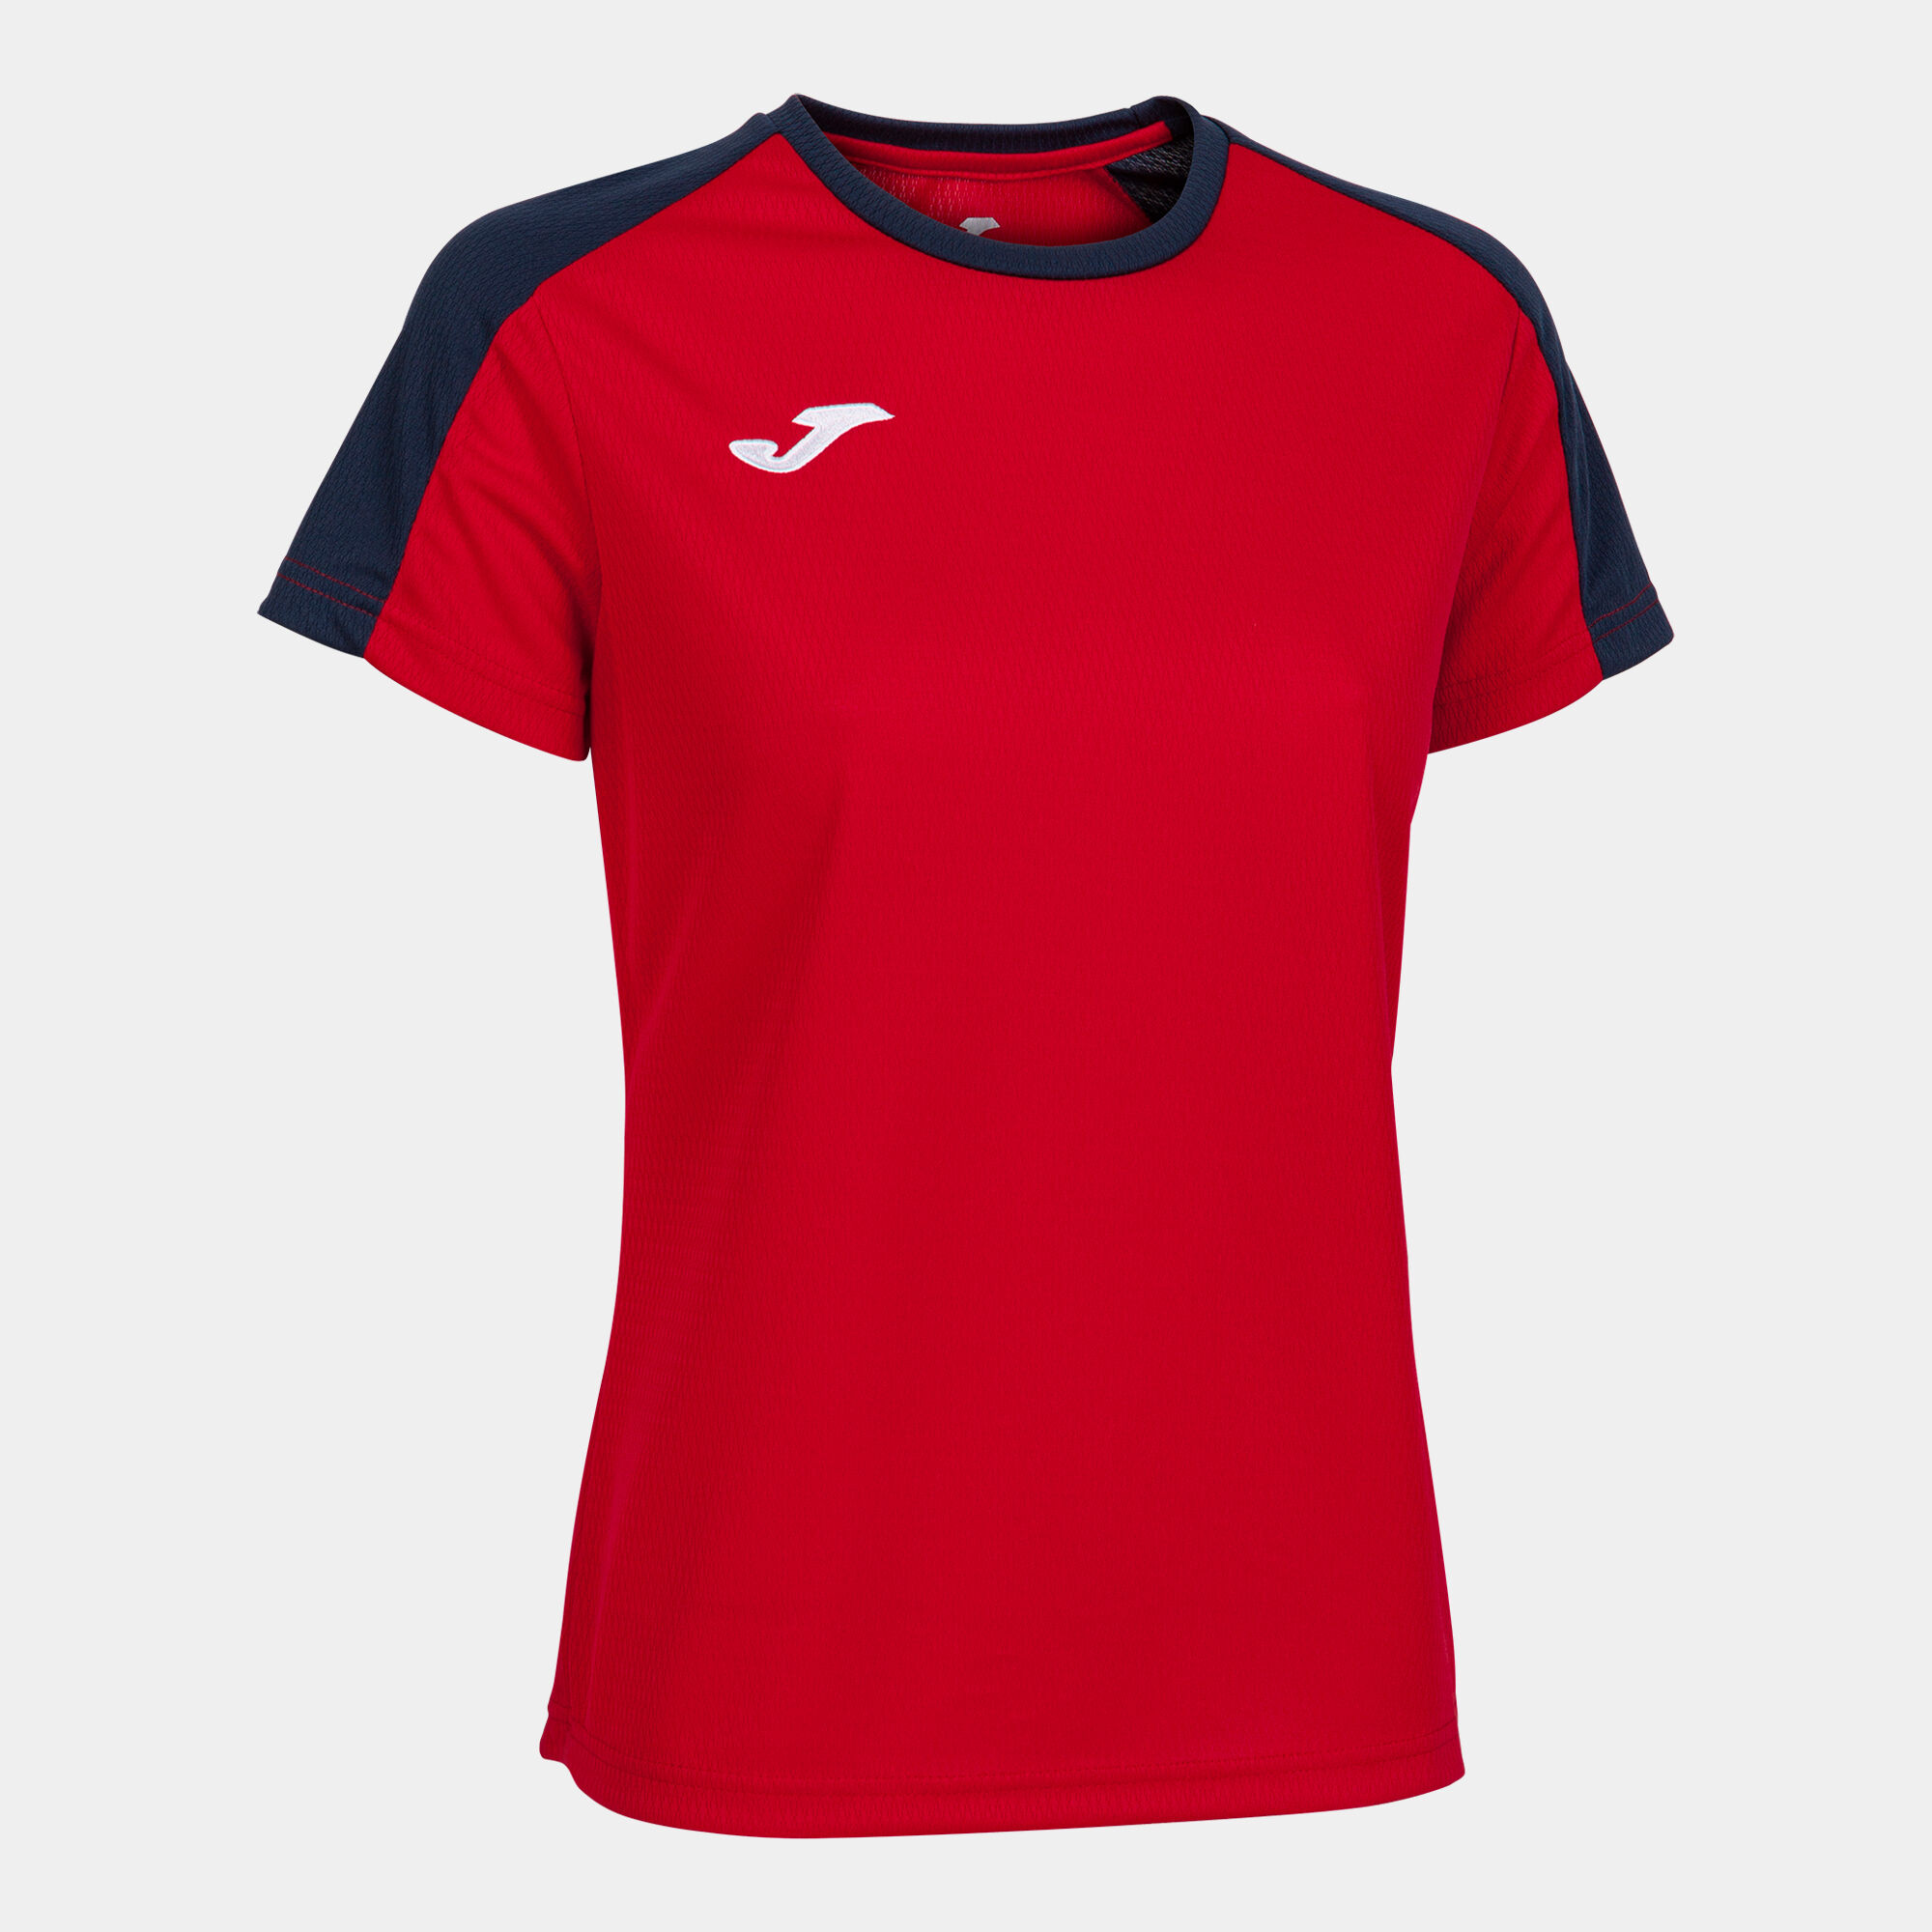 Camiseta manga corta mujer Eco Championship rojo marino